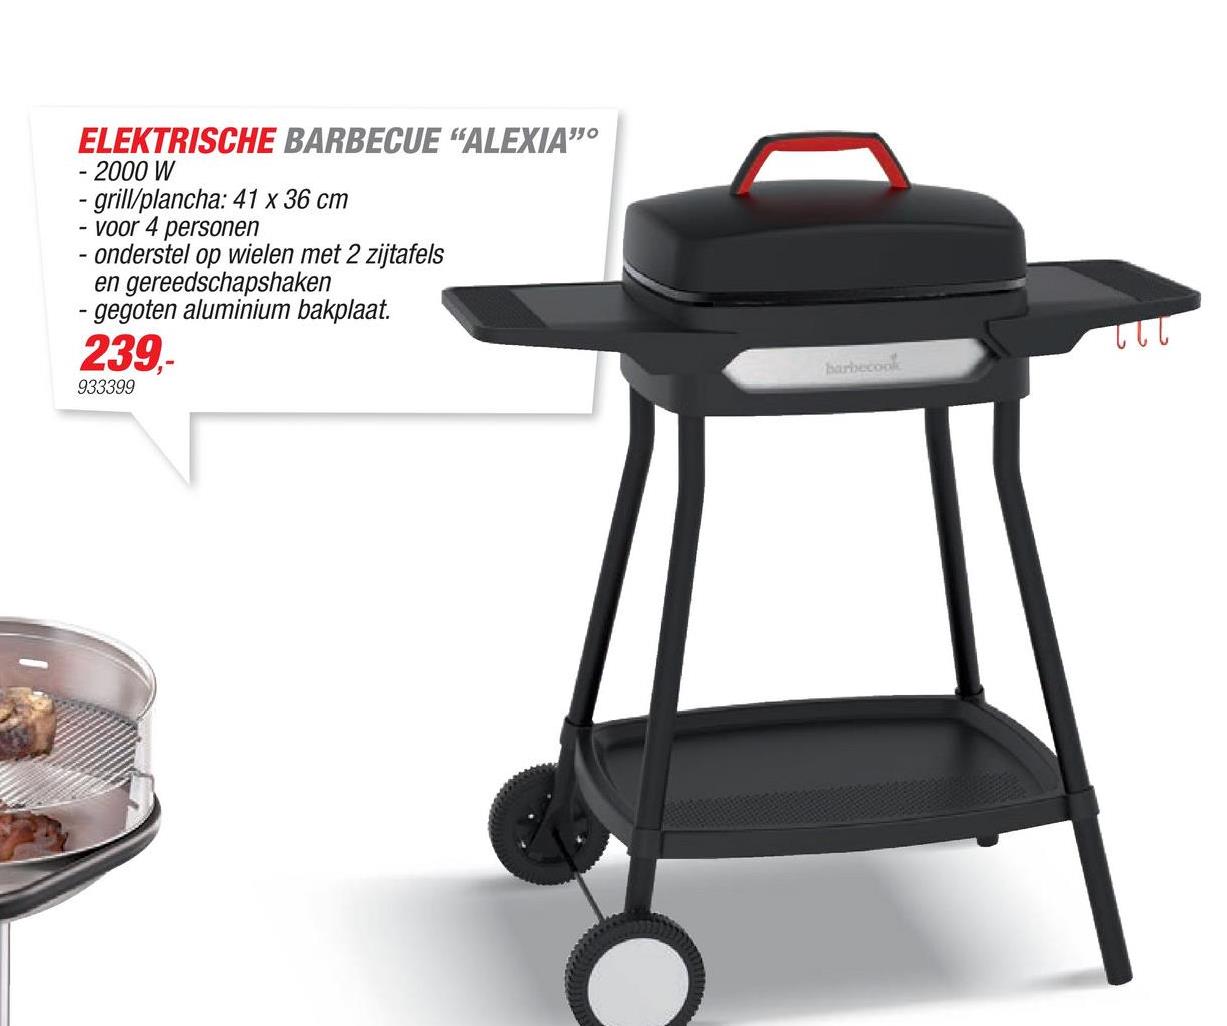 ELEKTRISCHE BARBECUE "ALEXIA"
2000 W
- grill/plancha: 41 x 36 cm
- voor 4 personen
- onderstel op wielen met 2 zijtafels
en gereedschapshaken
- gegoten aluminium bakplaat.
239,-
933399
Ꮣ Ꮣ Ꮣ
barbecon
